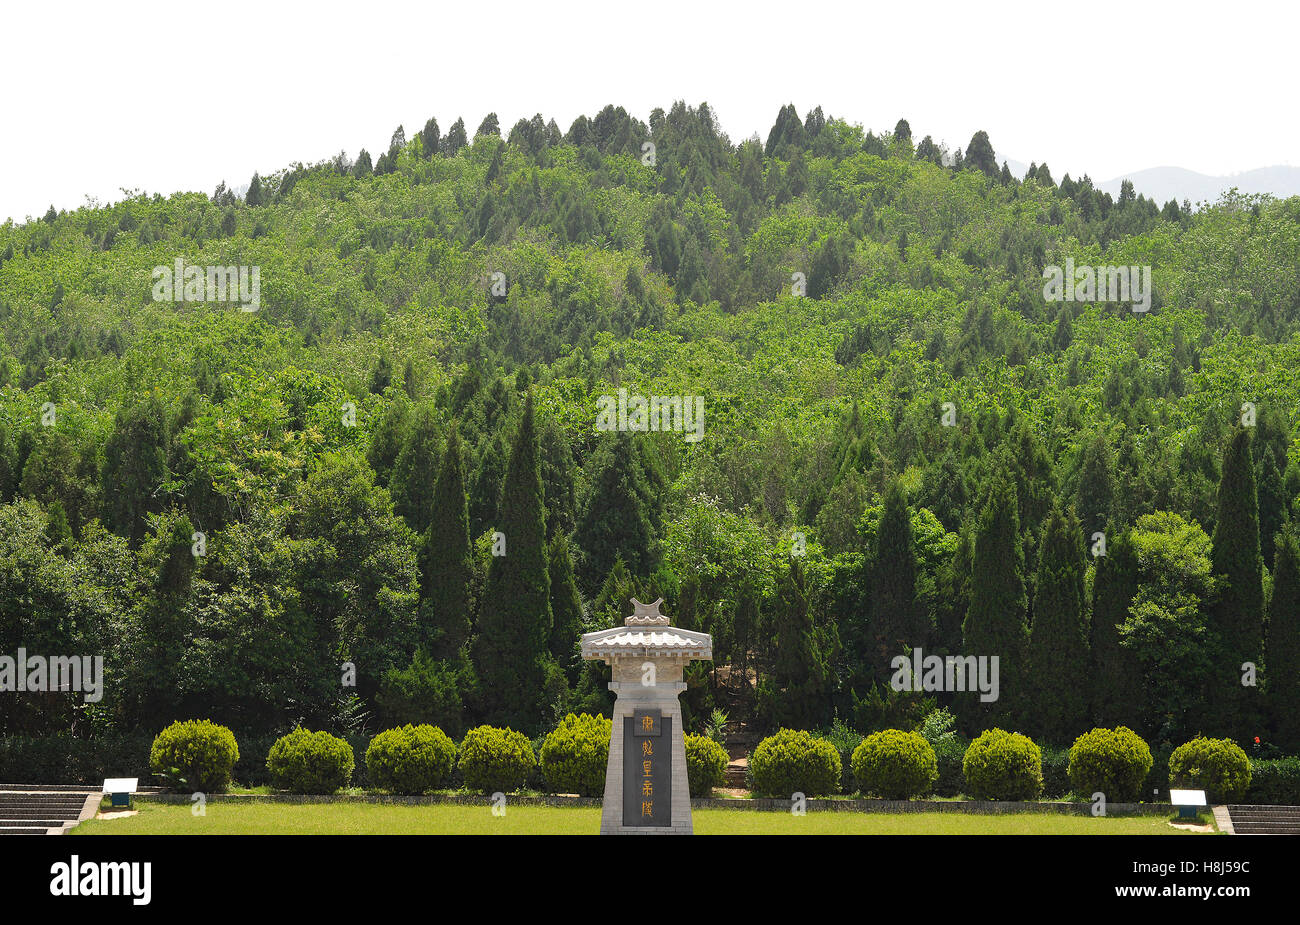 memorial of Qin Shi Huangdi emperor Xi'an China Stock Photo